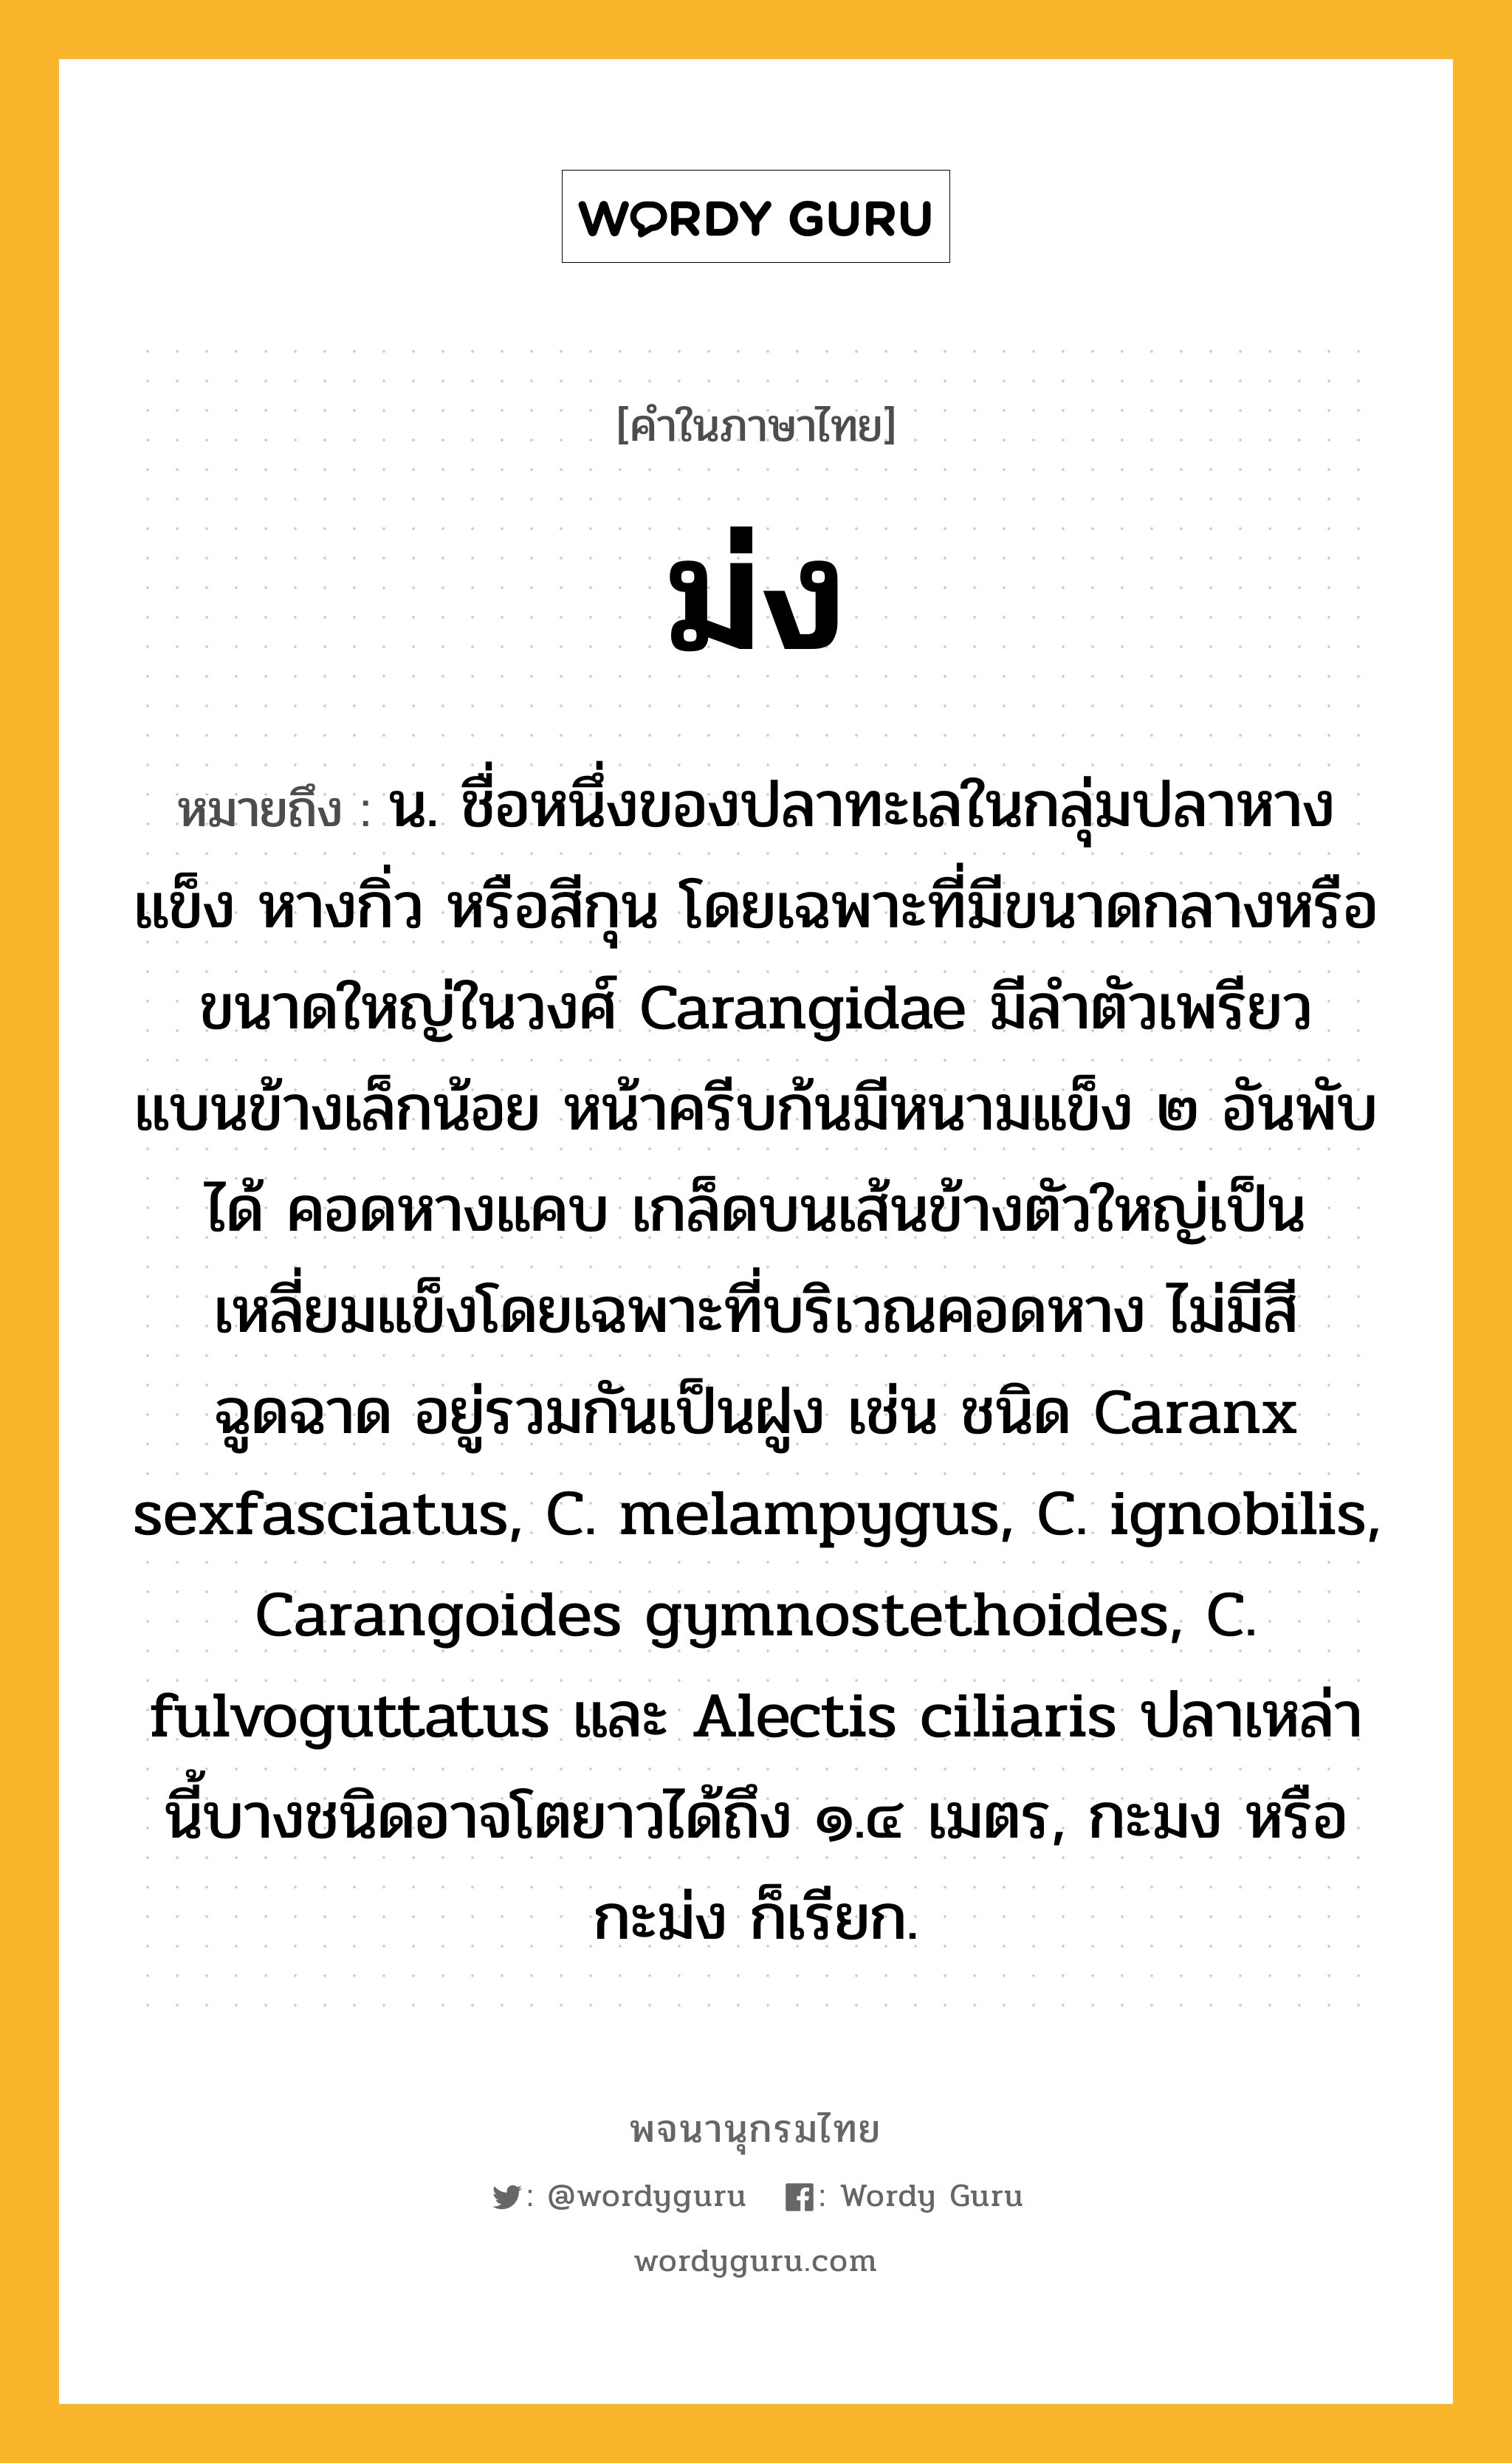 ม่ง หมายถึงอะไร?, คำในภาษาไทย ม่ง หมายถึง น. ชื่อหนึ่งของปลาทะเลในกลุ่มปลาหางแข็ง หางกิ่ว หรือสีกุน โดยเฉพาะที่มีขนาดกลางหรือขนาดใหญ่ในวงศ์ Carangidae มีลําตัวเพรียว แบนข้างเล็กน้อย หน้าครีบก้นมีหนามแข็ง ๒ อันพับได้ คอดหางแคบ เกล็ดบนเส้นข้างตัวใหญ่เป็นเหลี่ยมแข็งโดยเฉพาะที่บริเวณคอดหาง ไม่มีสีฉูดฉาด อยู่รวมกันเป็นฝูง เช่น ชนิด Caranx sexfasciatus, C. melampygus, C. ignobilis, Carangoides gymnostethoides, C. fulvoguttatus และ Alectis ciliaris ปลาเหล่านี้บางชนิดอาจโตยาวได้ถึง ๑.๔ เมตร, กะมง หรือ กะม่ง ก็เรียก.